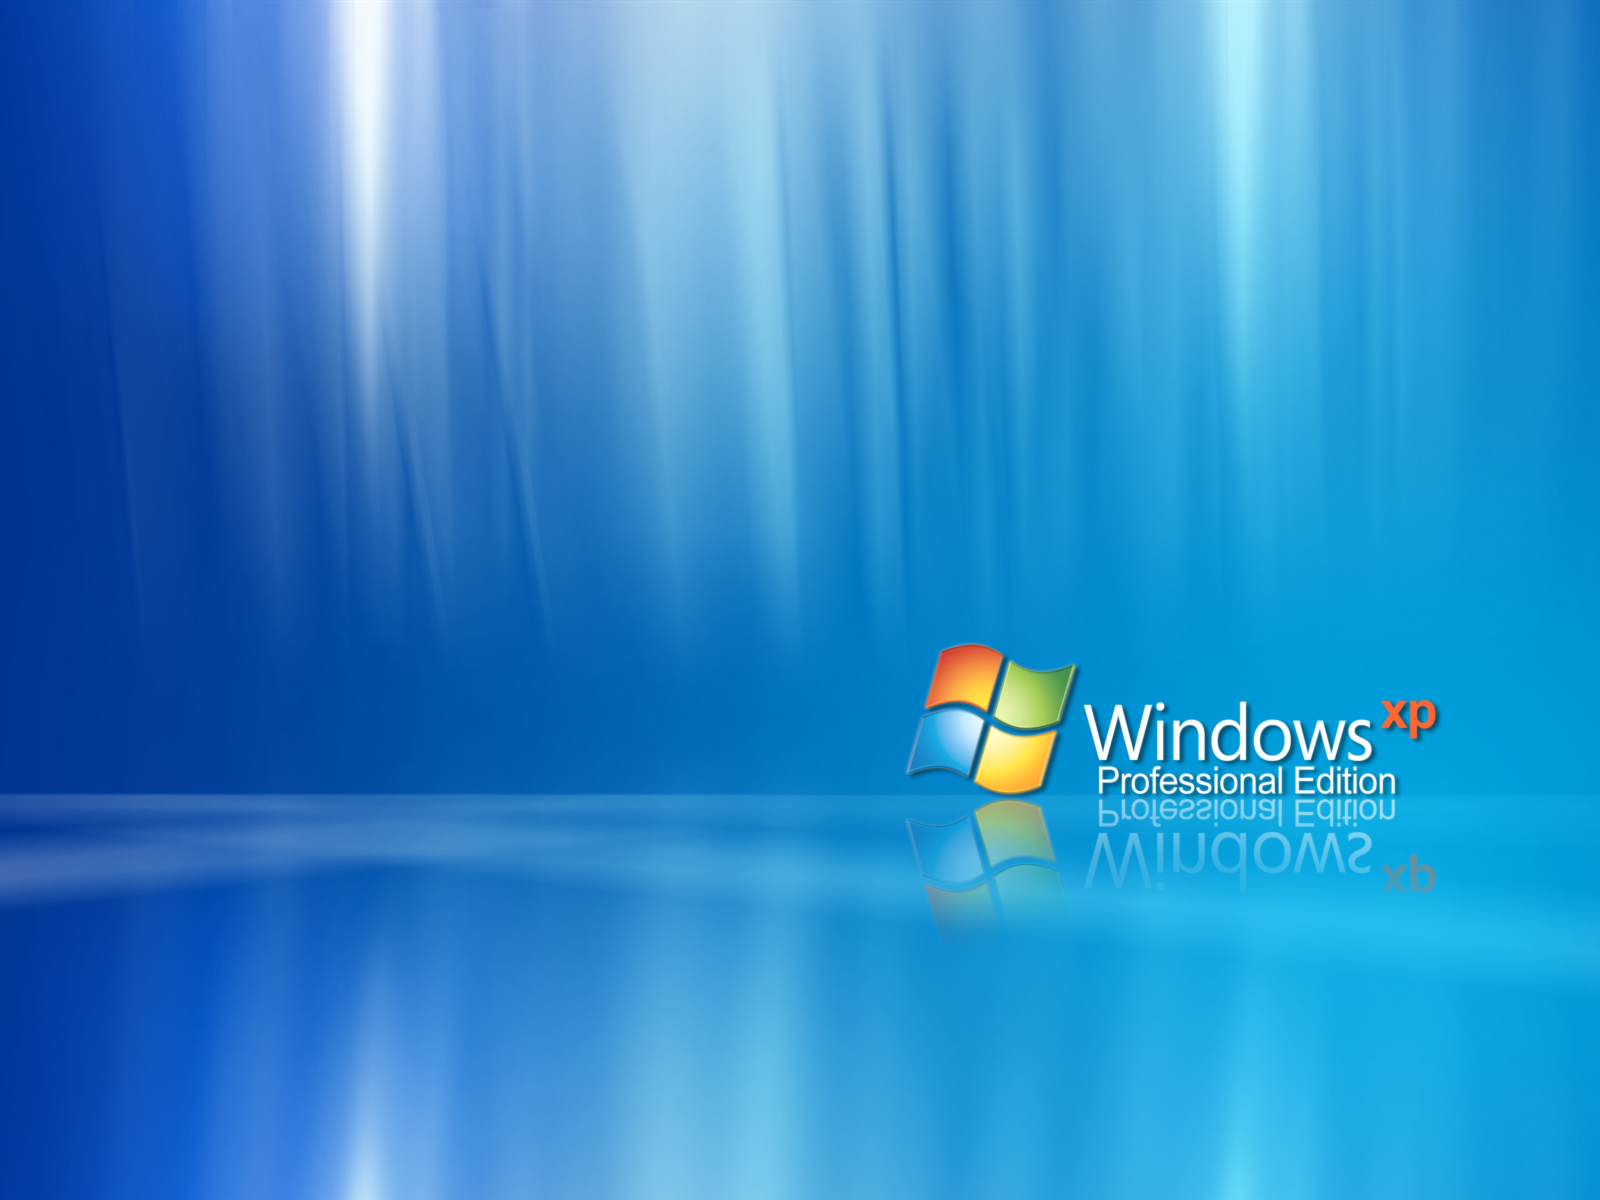 Tải về hình nền Windows XP 3D miễn phí để thỏa sức sáng tạo và tùy chỉnh desktop của bạn. Hình ảnh đẹp và lung linh sẽ giúp bạn tăng thêm động lực và cảm thấy thoải mái trong quá trình sử dụng máy tính.